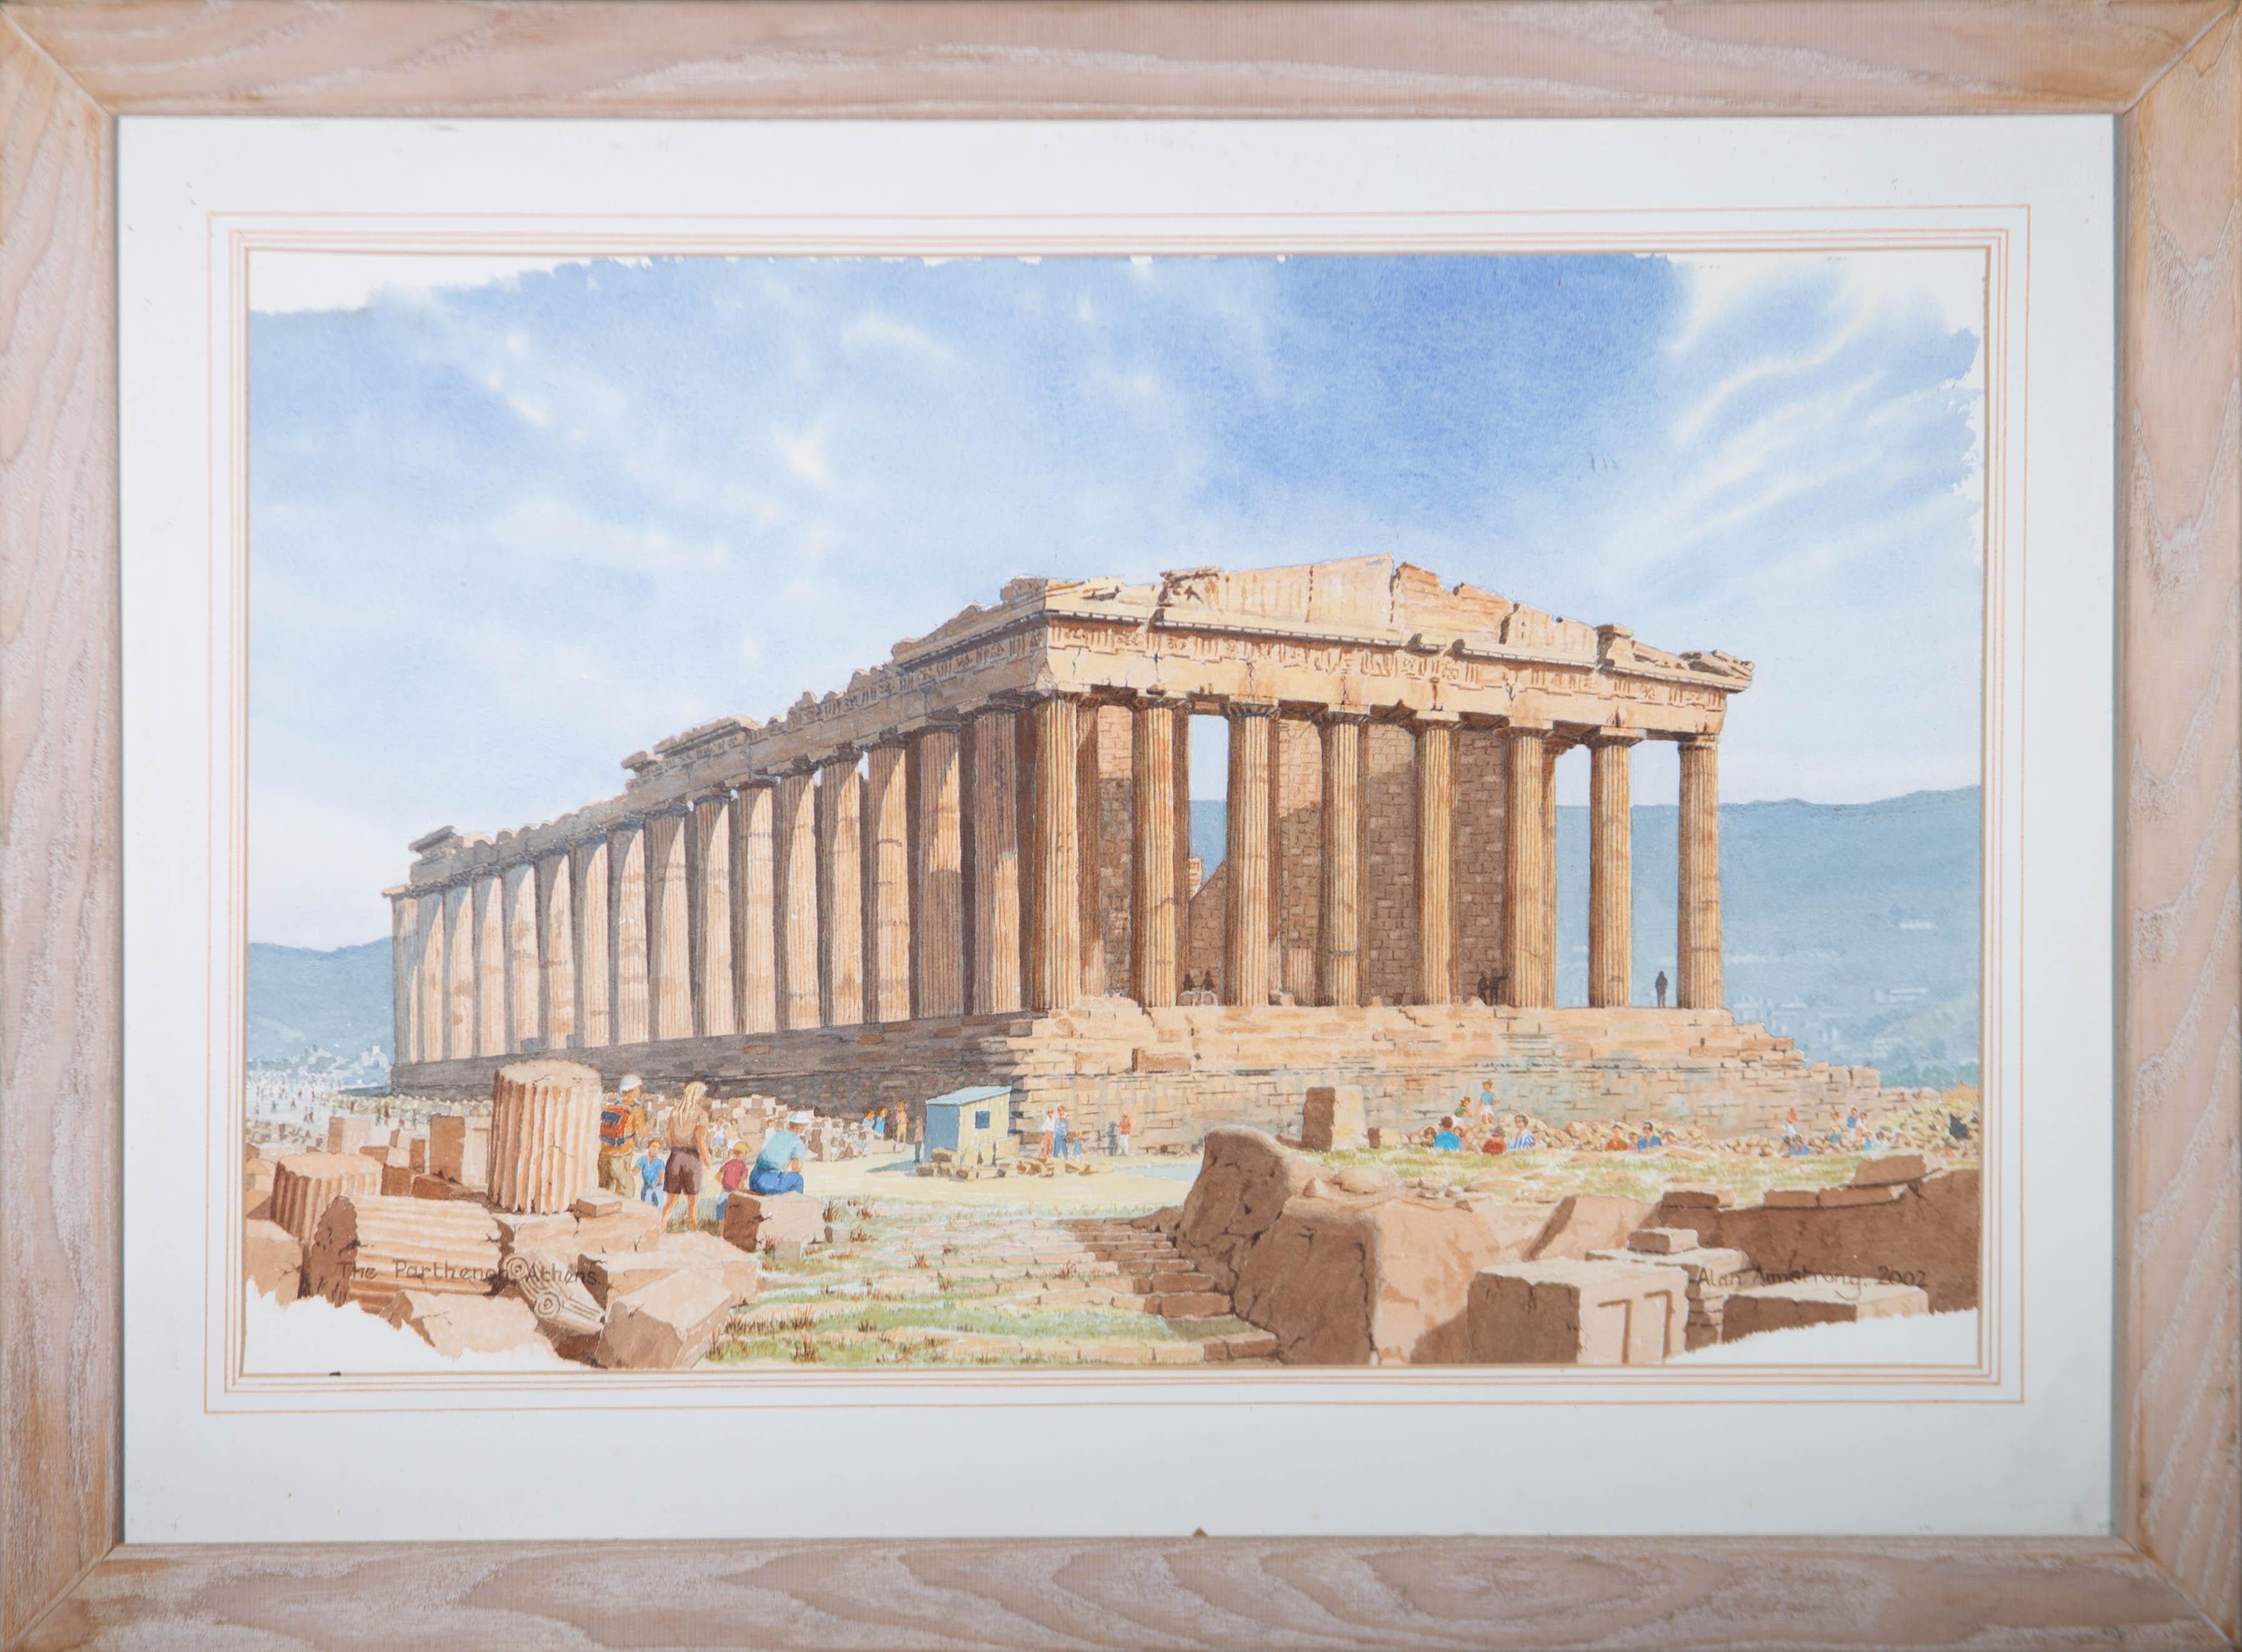 Alan Armstrong - 2002 Watercolour, The Parthenon, Athens